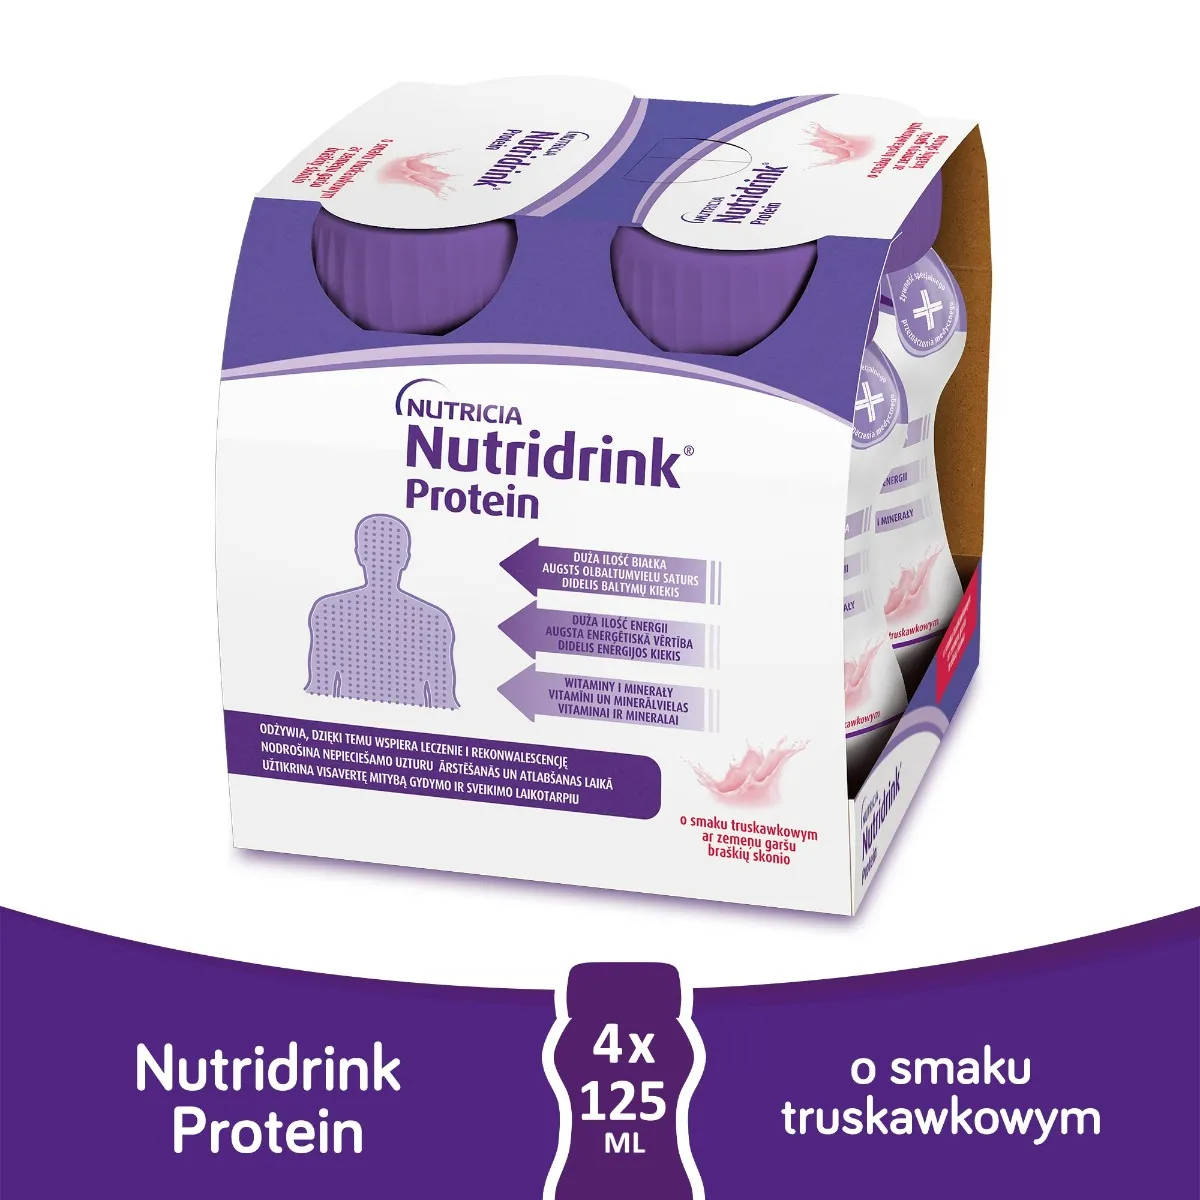 Nutridrink Protein, o smaku truskawkowym, 4x125 ml 